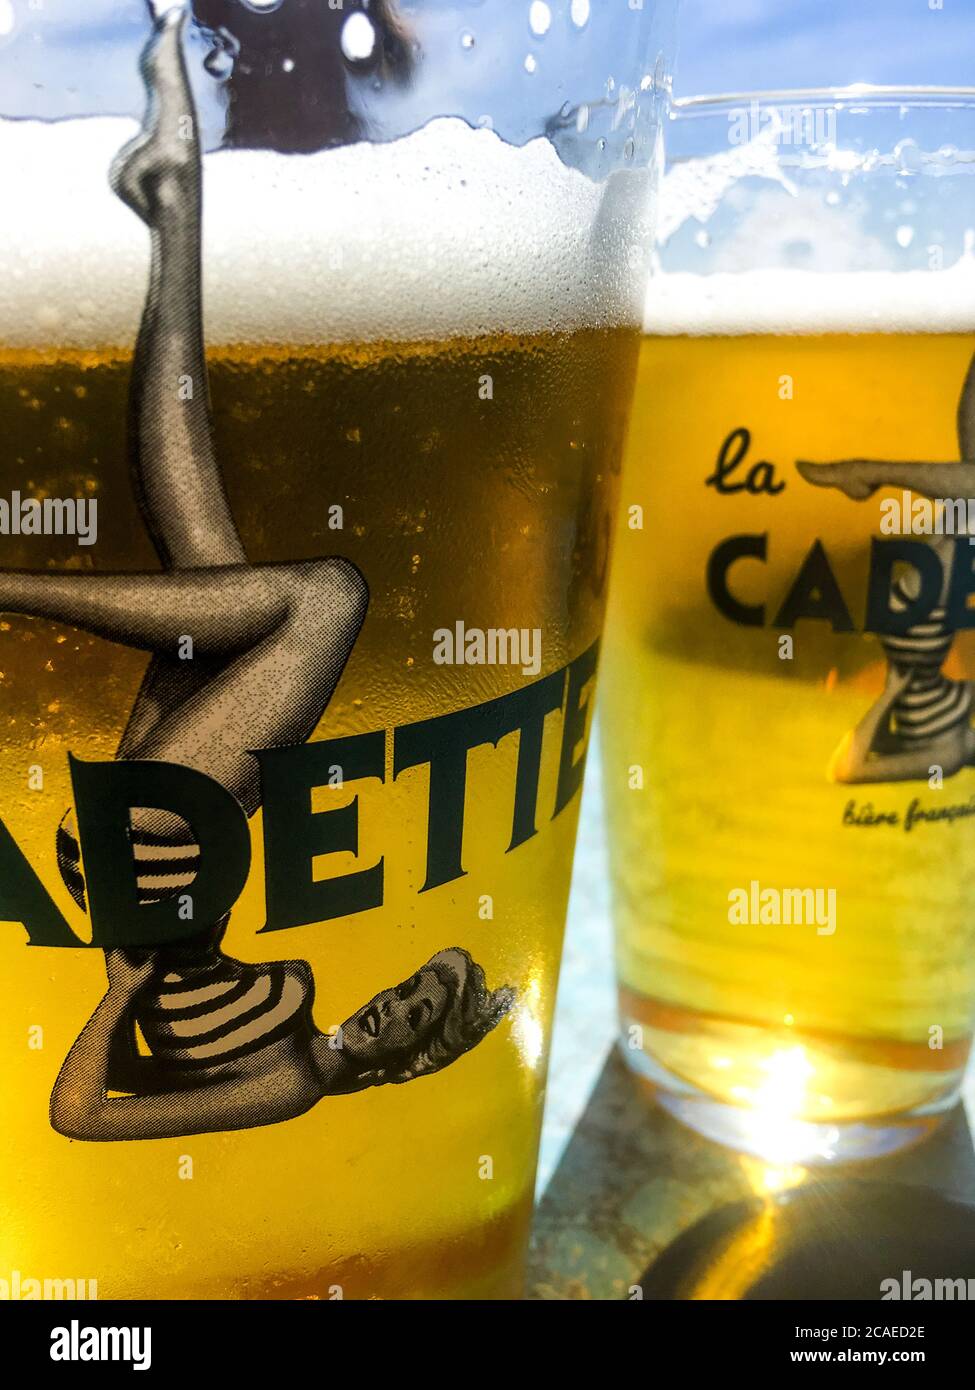 La Cadette, lokales Bier, Le Portel, Pas-de-Calais, Hauts de France,  Frankreich Stockfotografie - Alamy